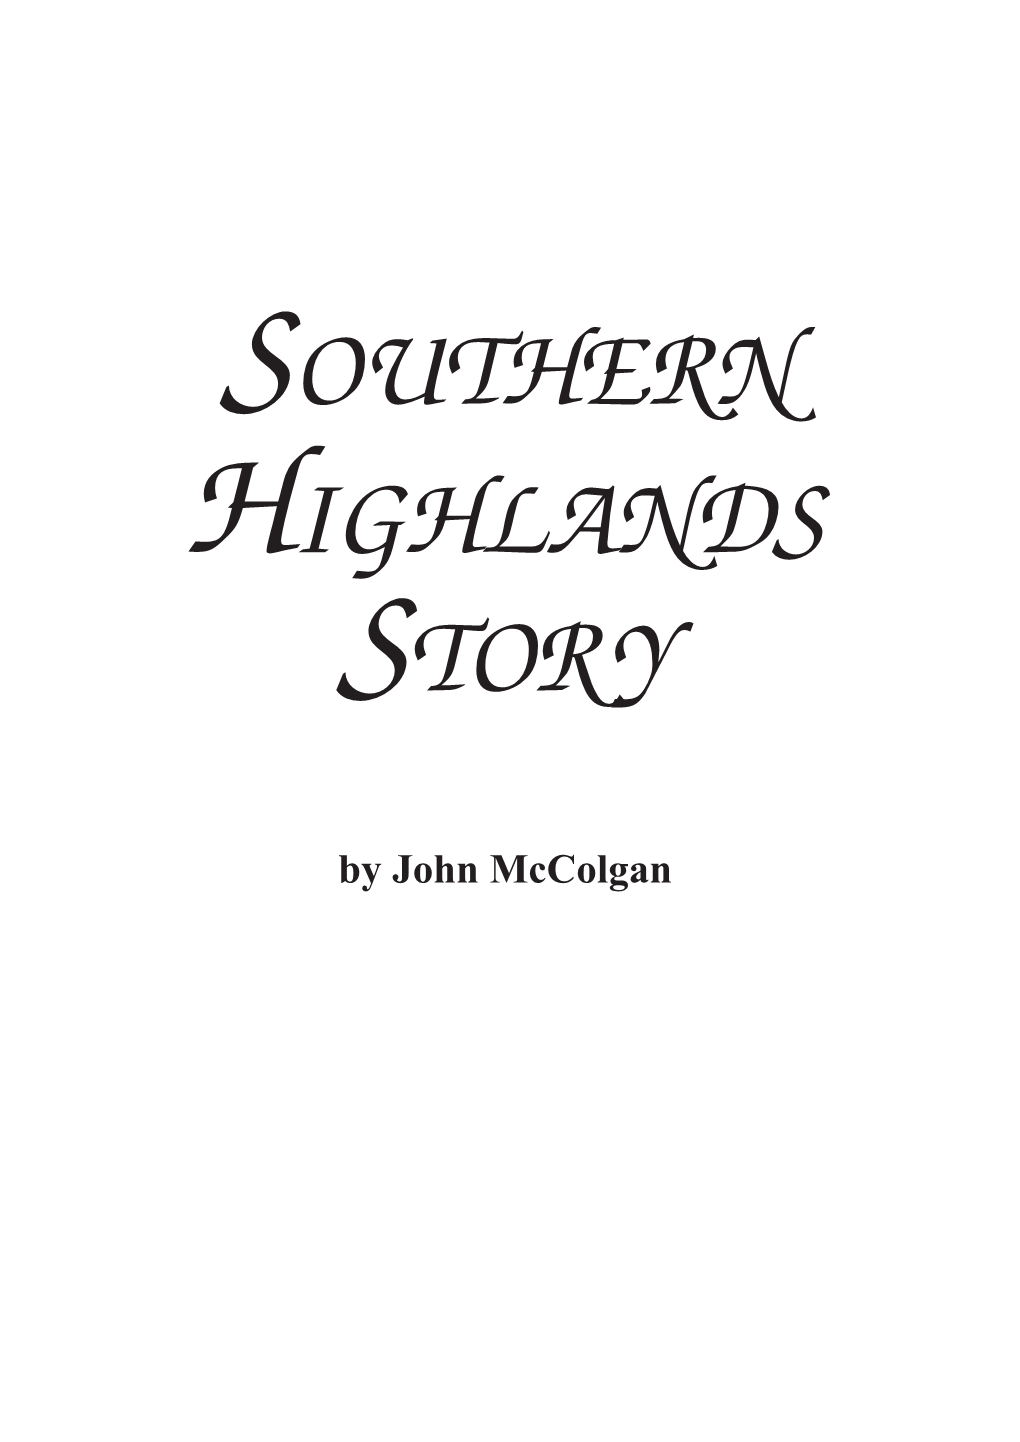 Southern Highlands Story